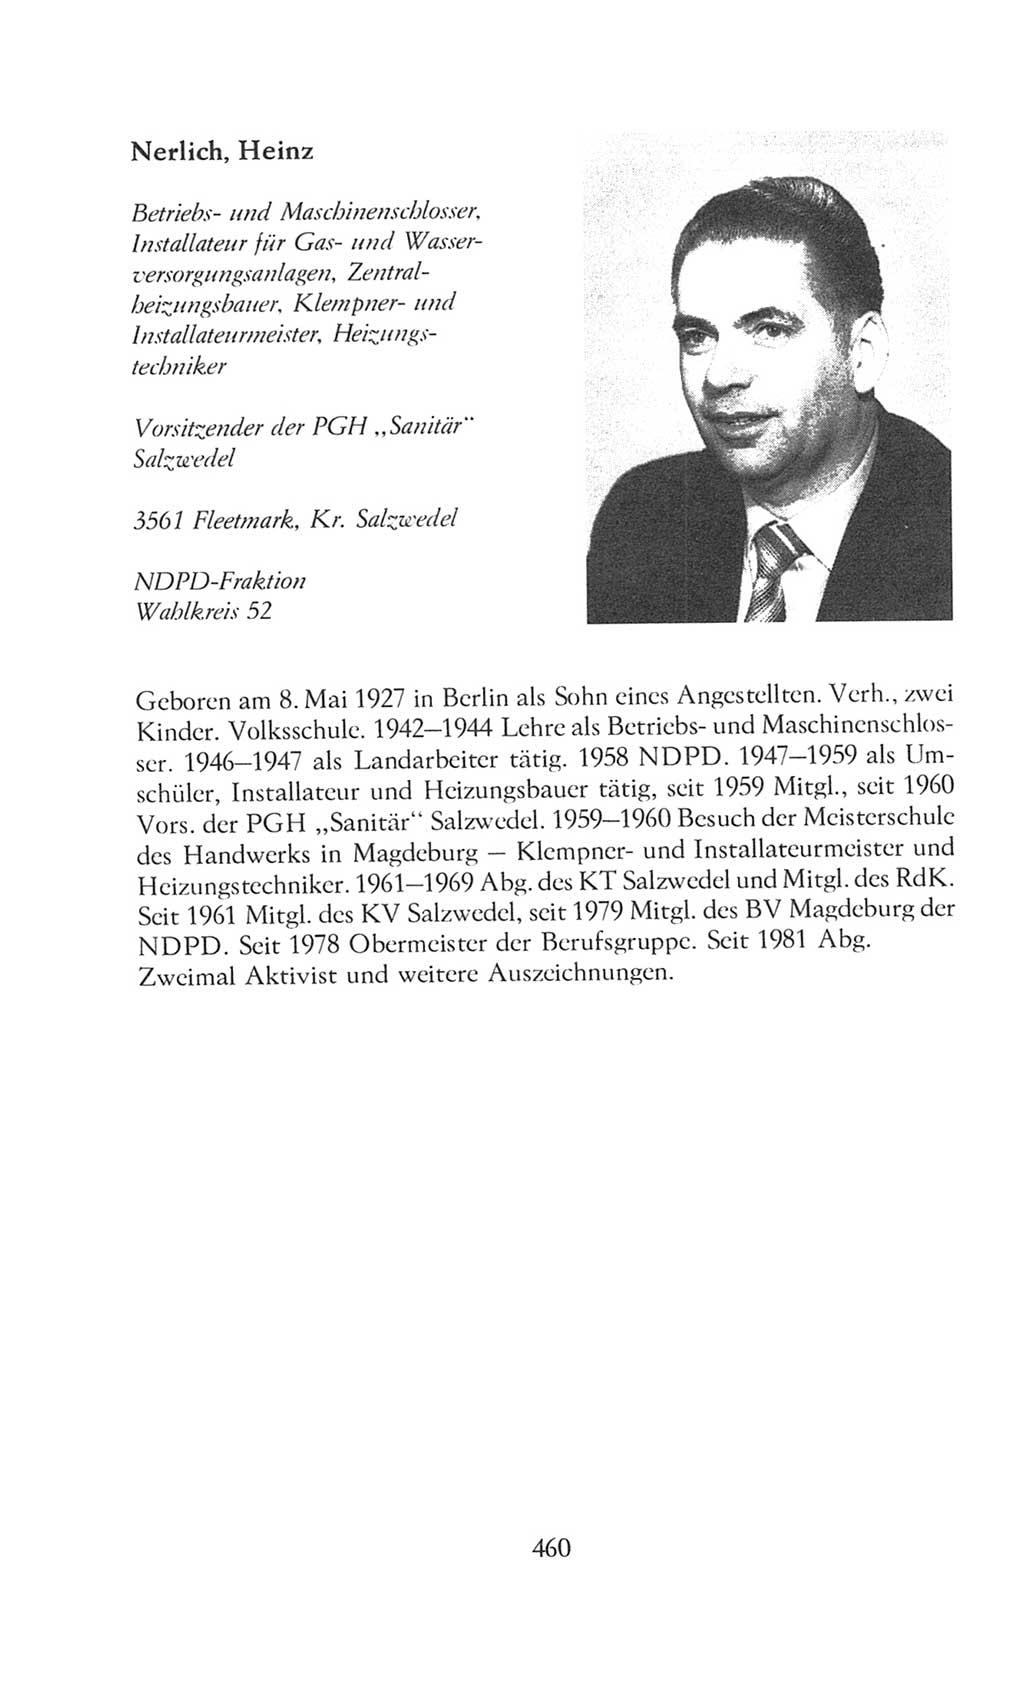 Volkskammer (VK) der Deutschen Demokratischen Republik (DDR), 8. Wahlperiode 1981-1986, Seite 460 (VK. DDR 8. WP. 1981-1986, S. 460)